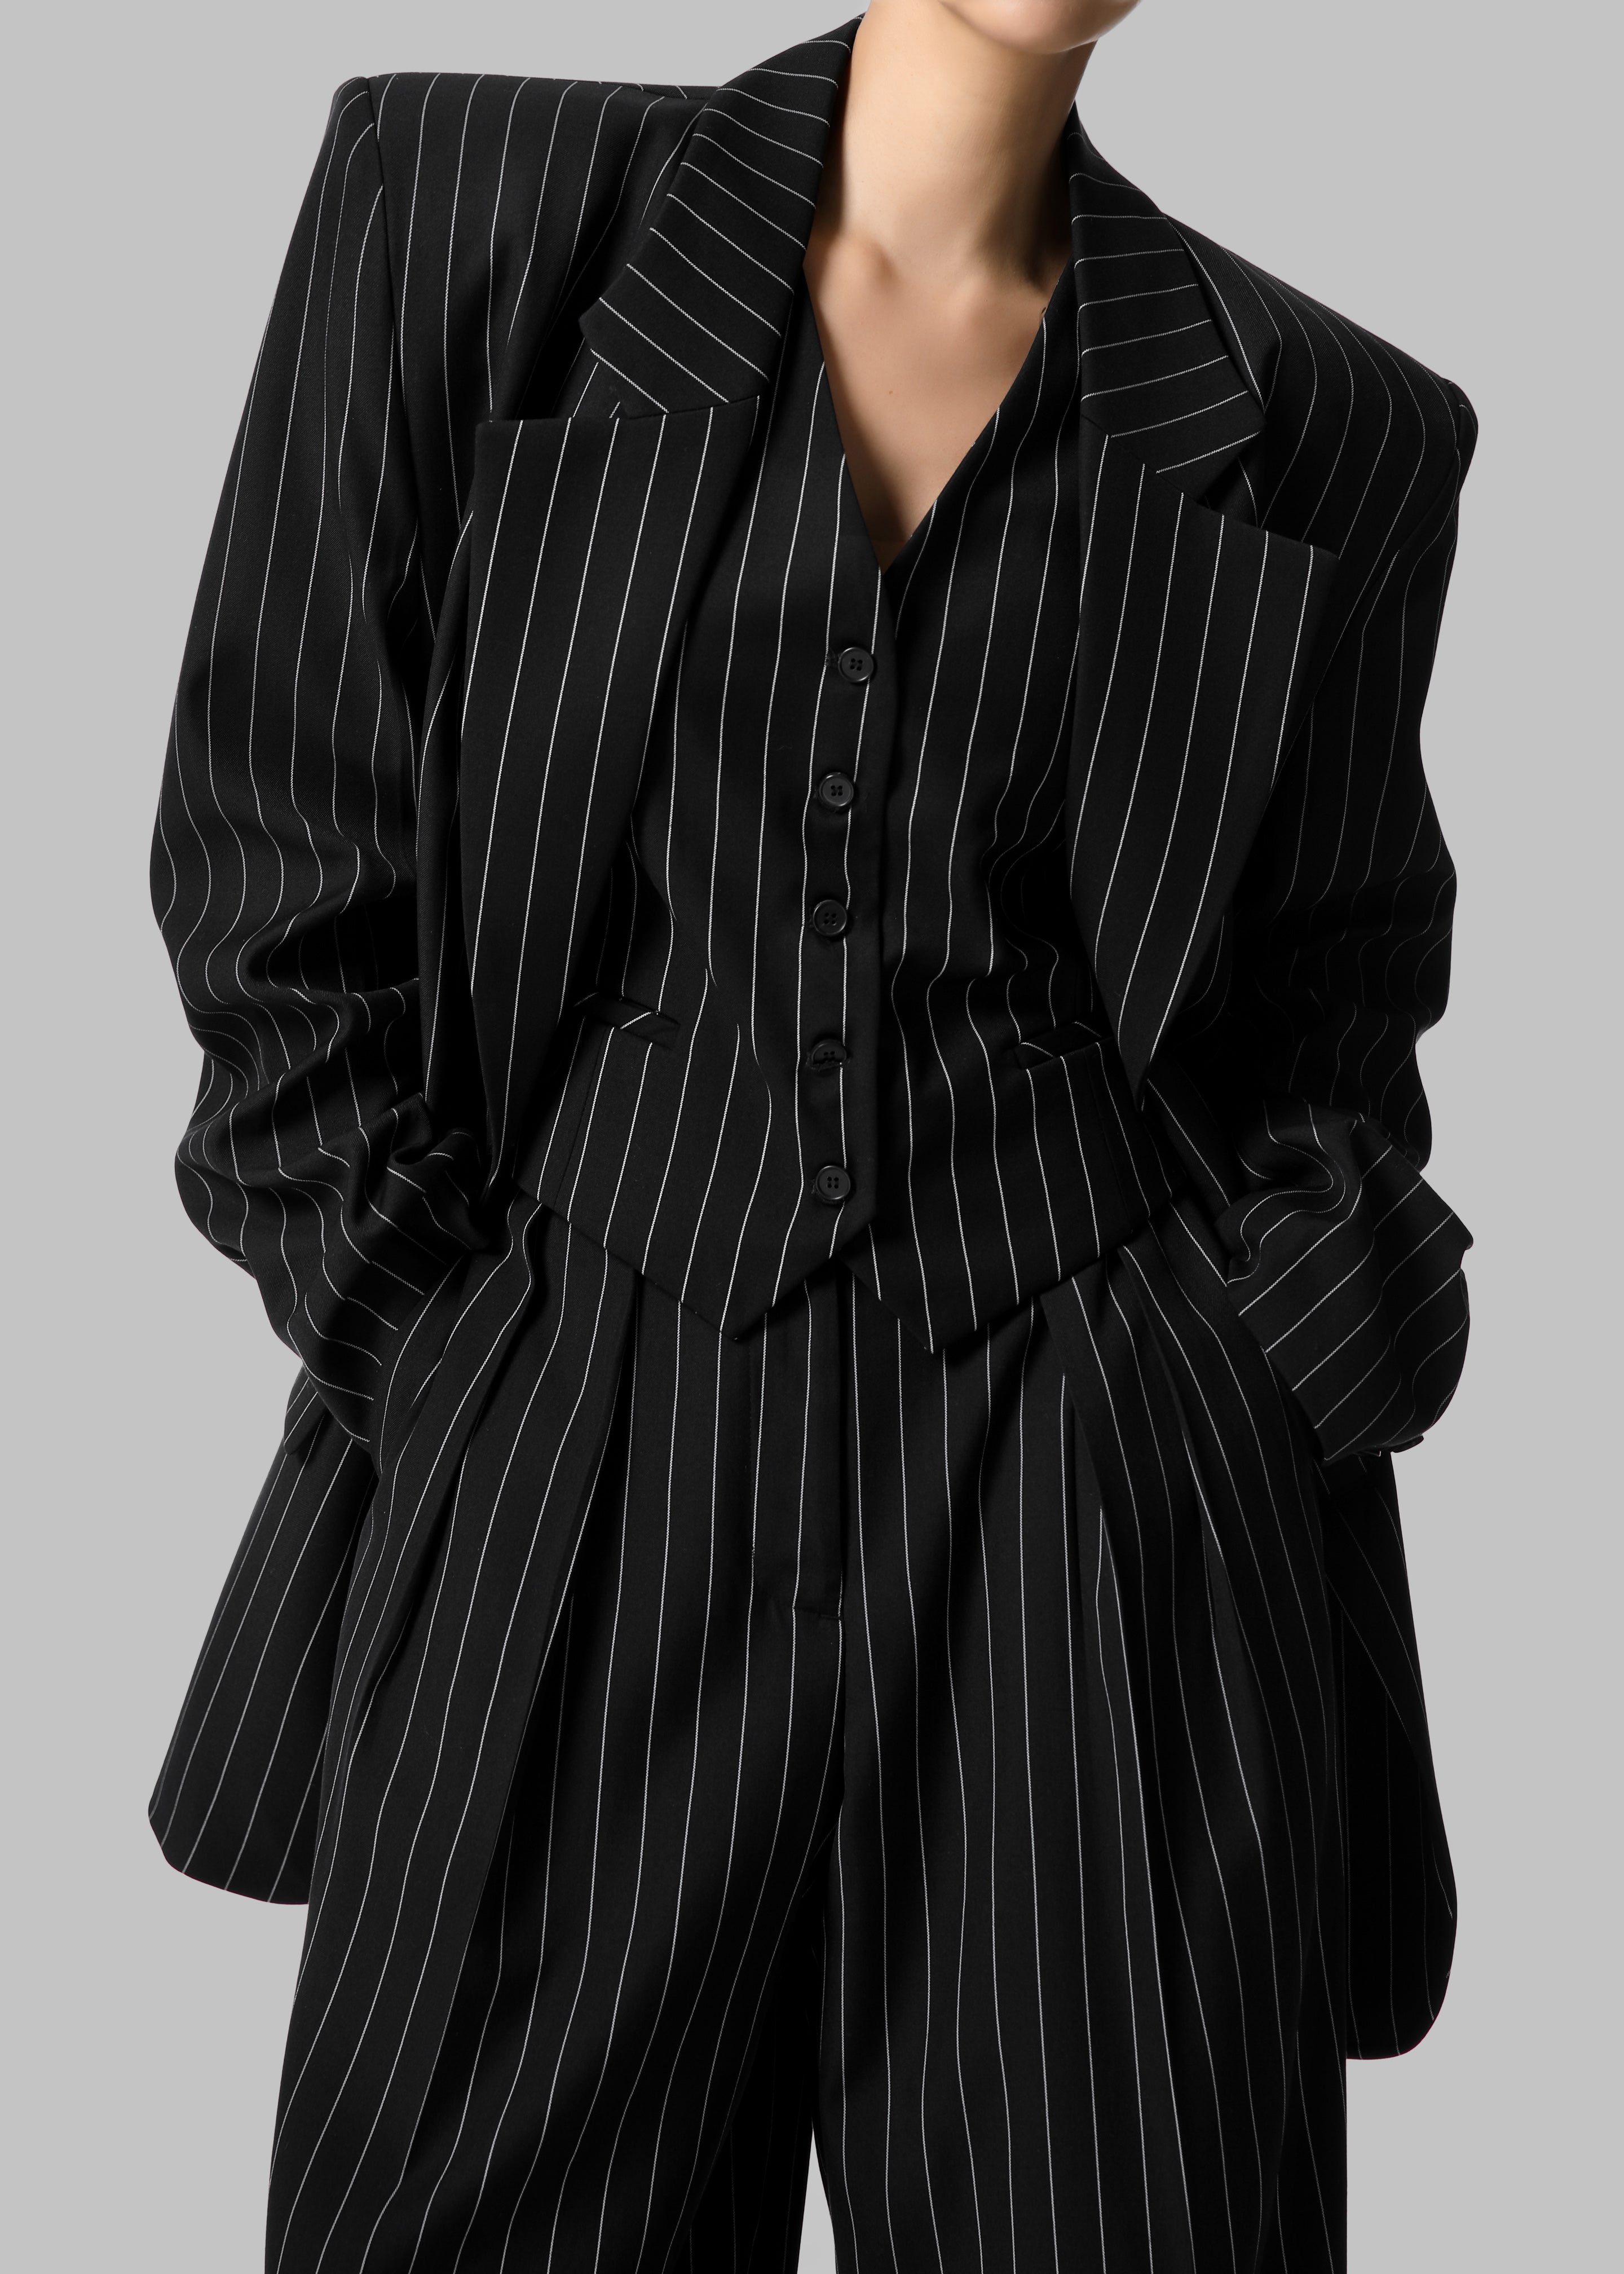 Holland Suit Vest - Black/White Pinstripe - 1